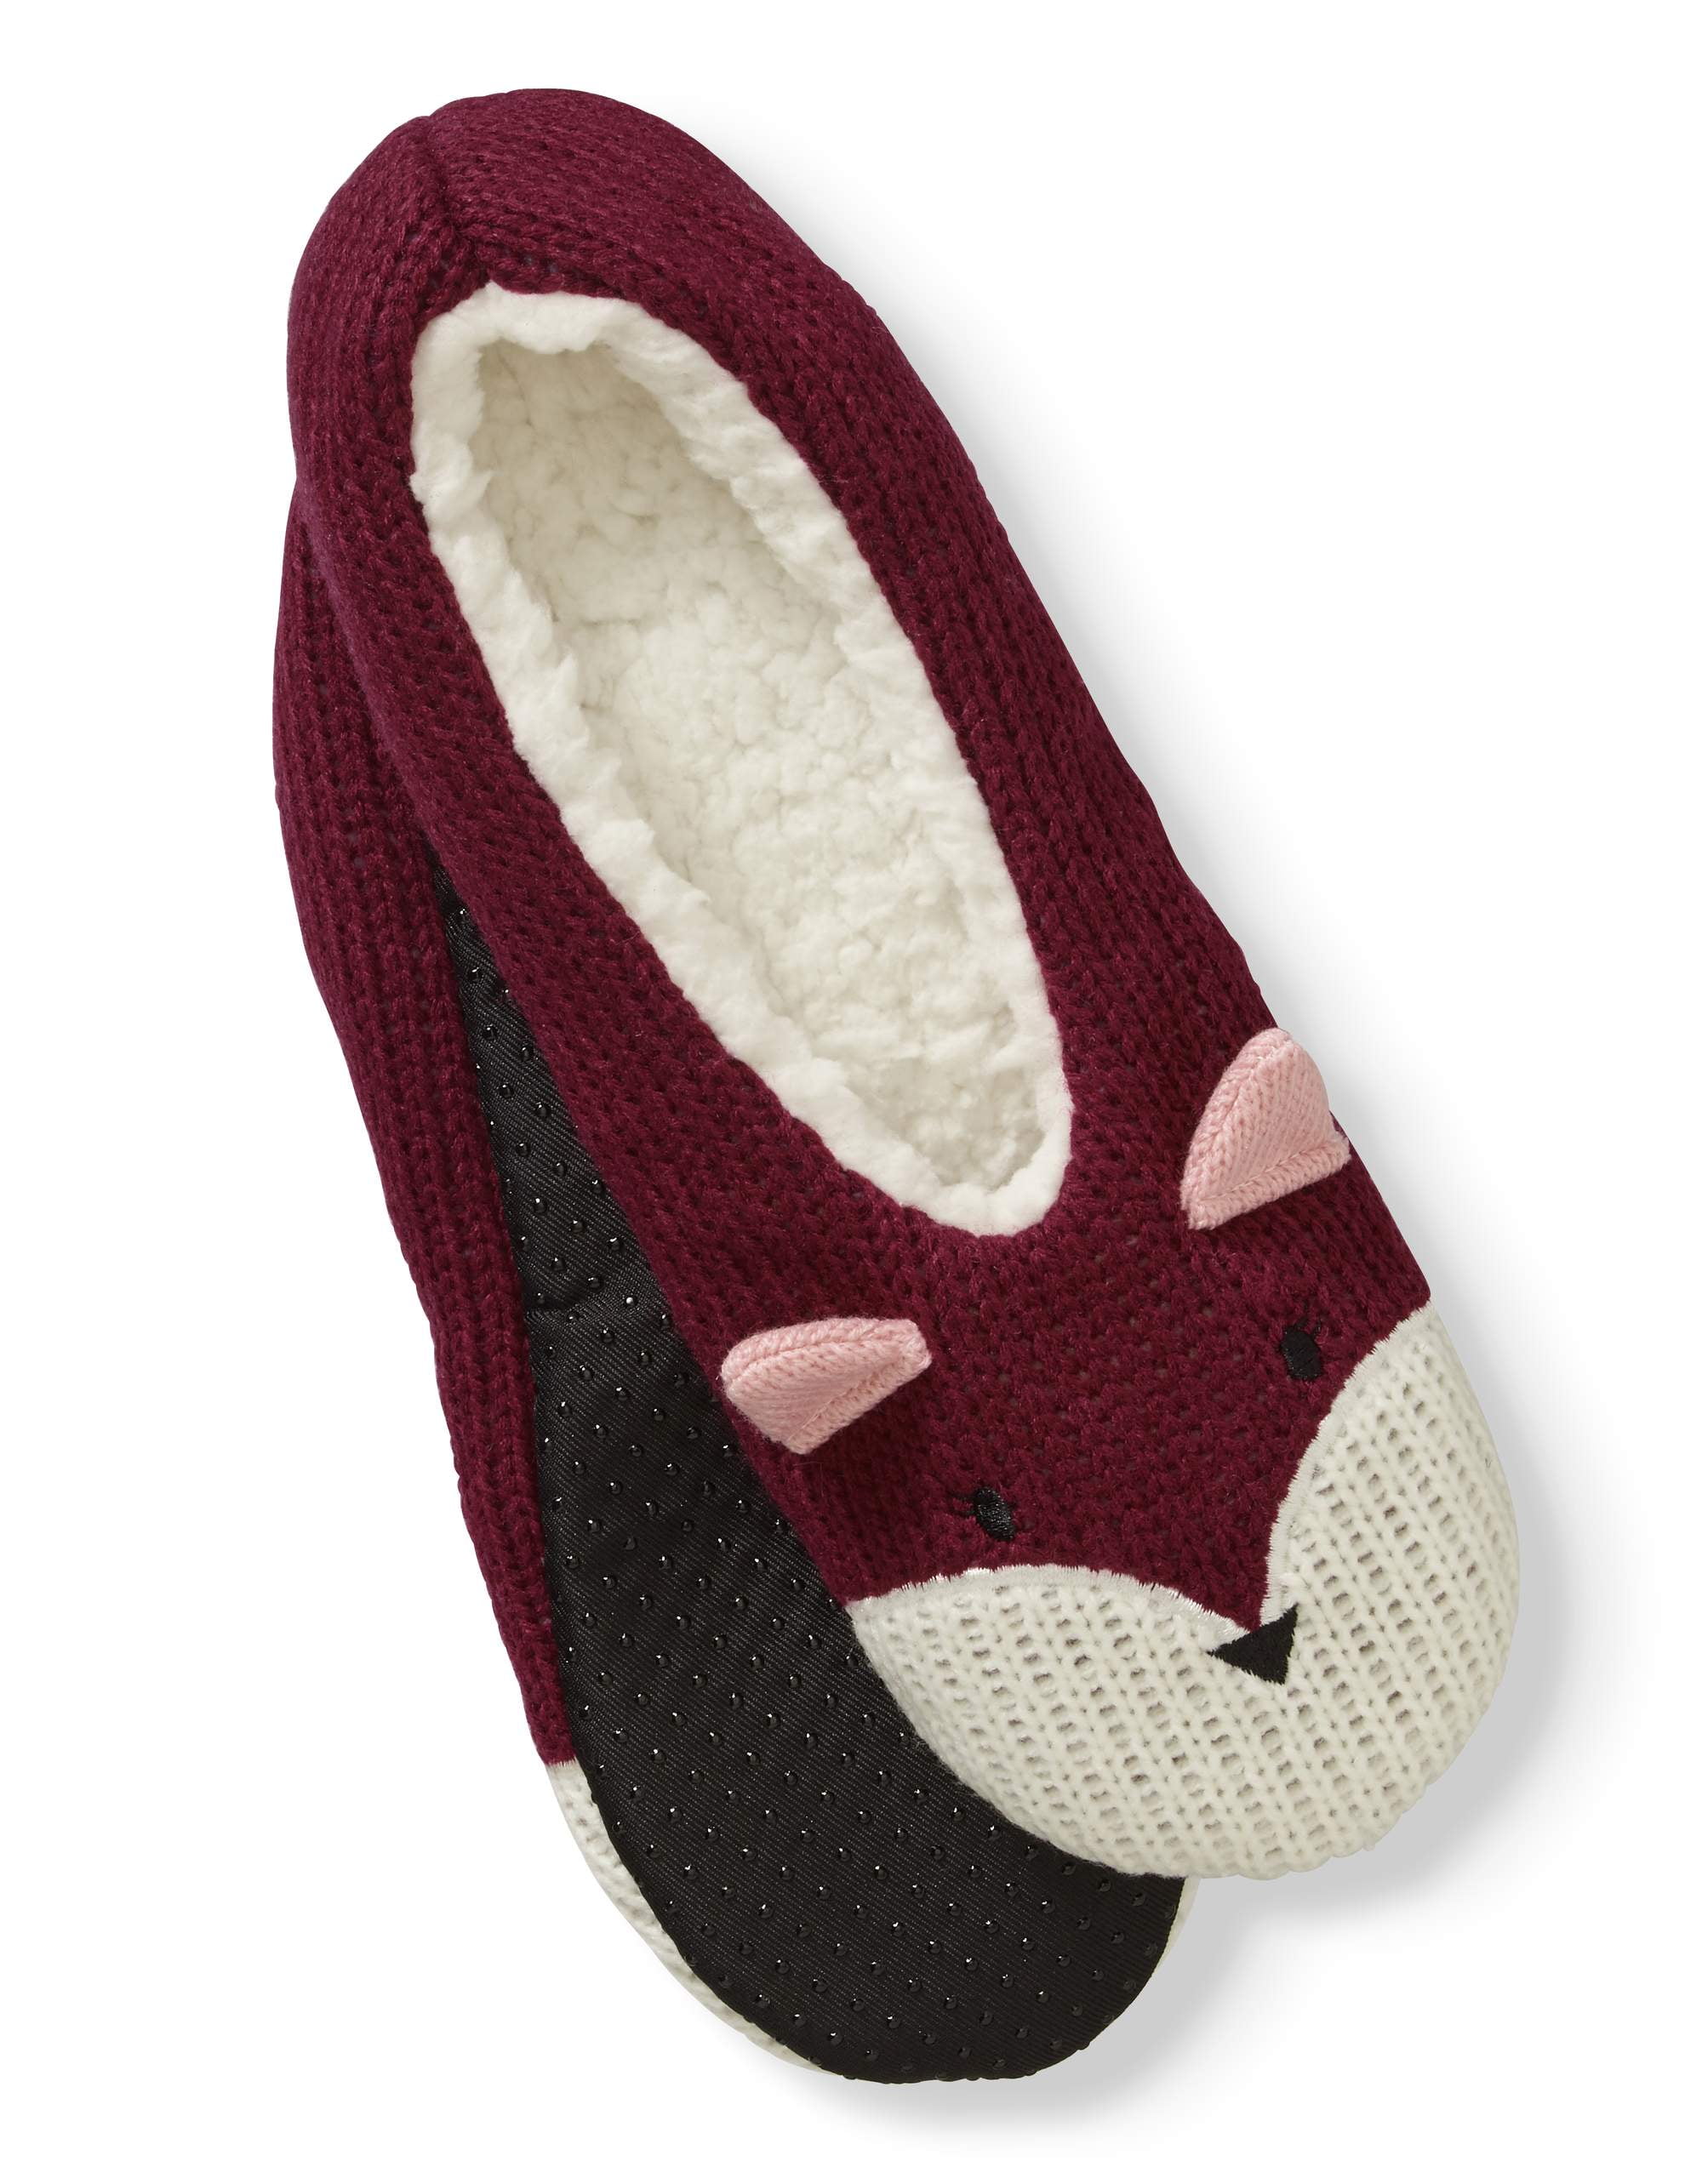 3/6 Ladies Girls Animal Slipper Socks Novelty Design Non Slip Gripper Sole 4-8